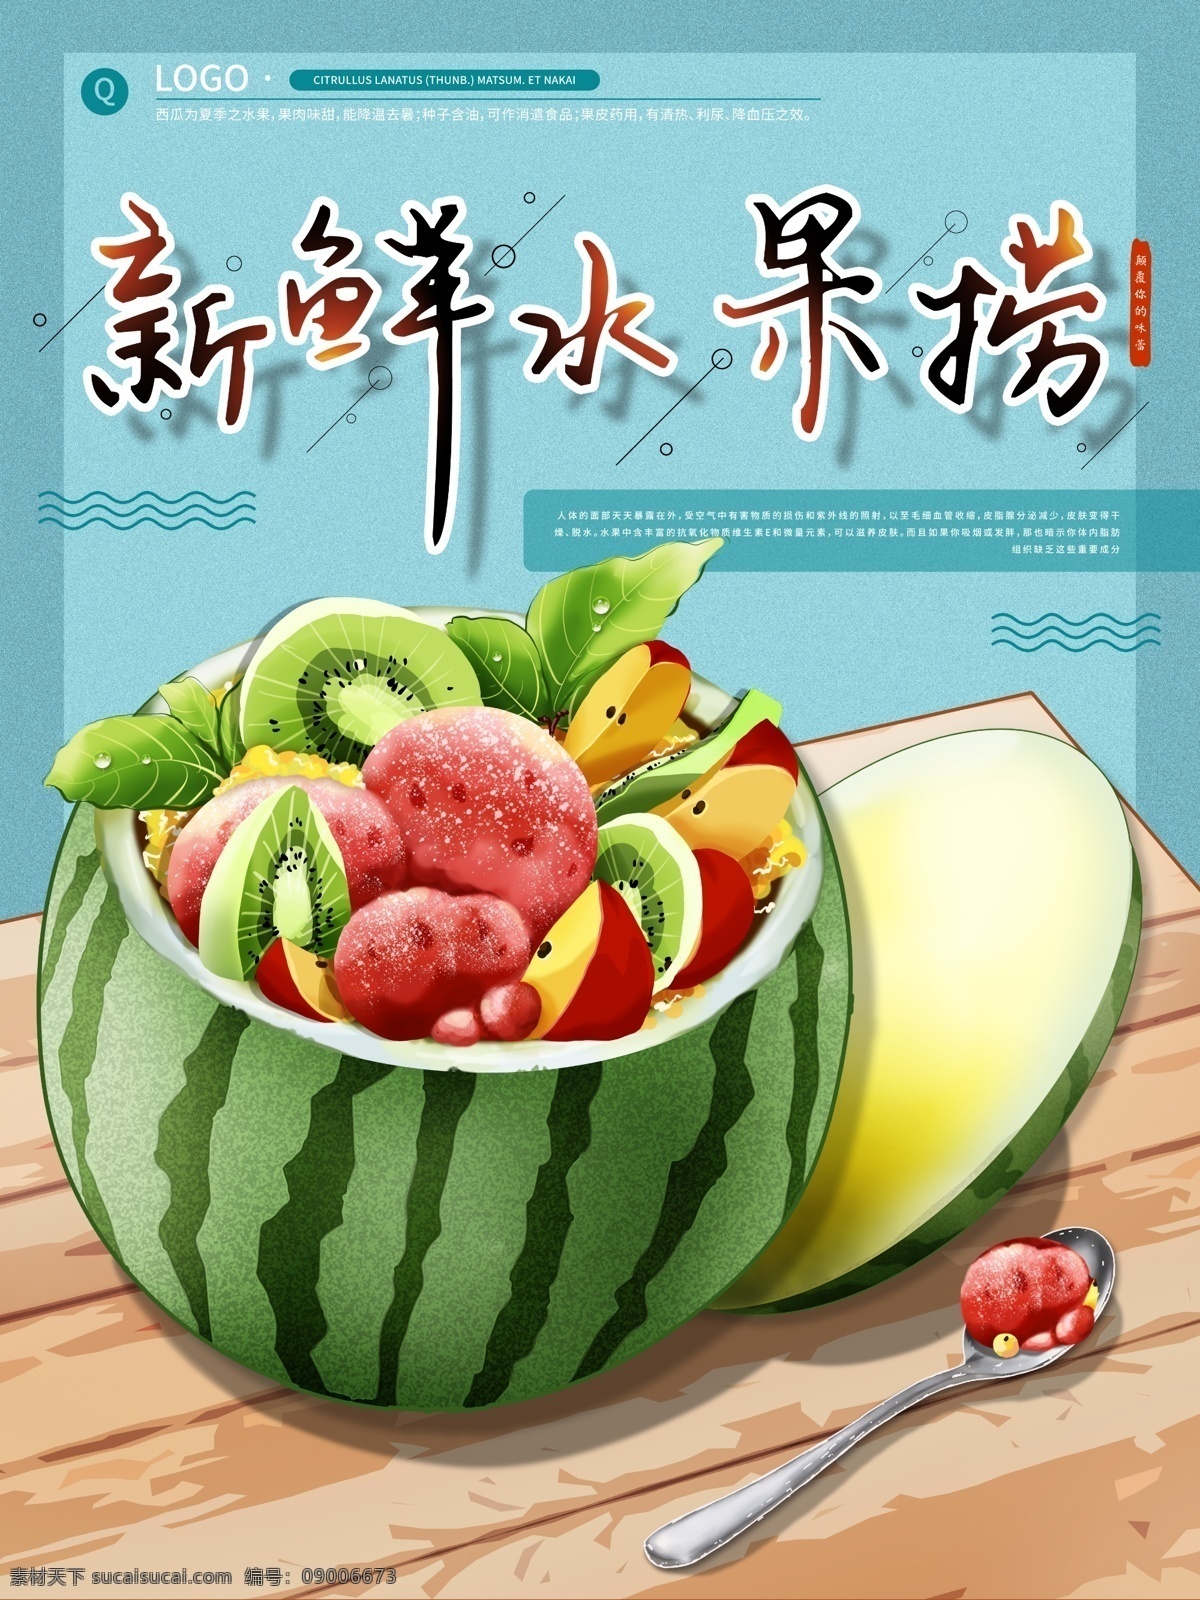 水果海报 水果素材 蔬菜素材 蔬果海报 绿色水果 绿色素材 生鲜美味水果 分层